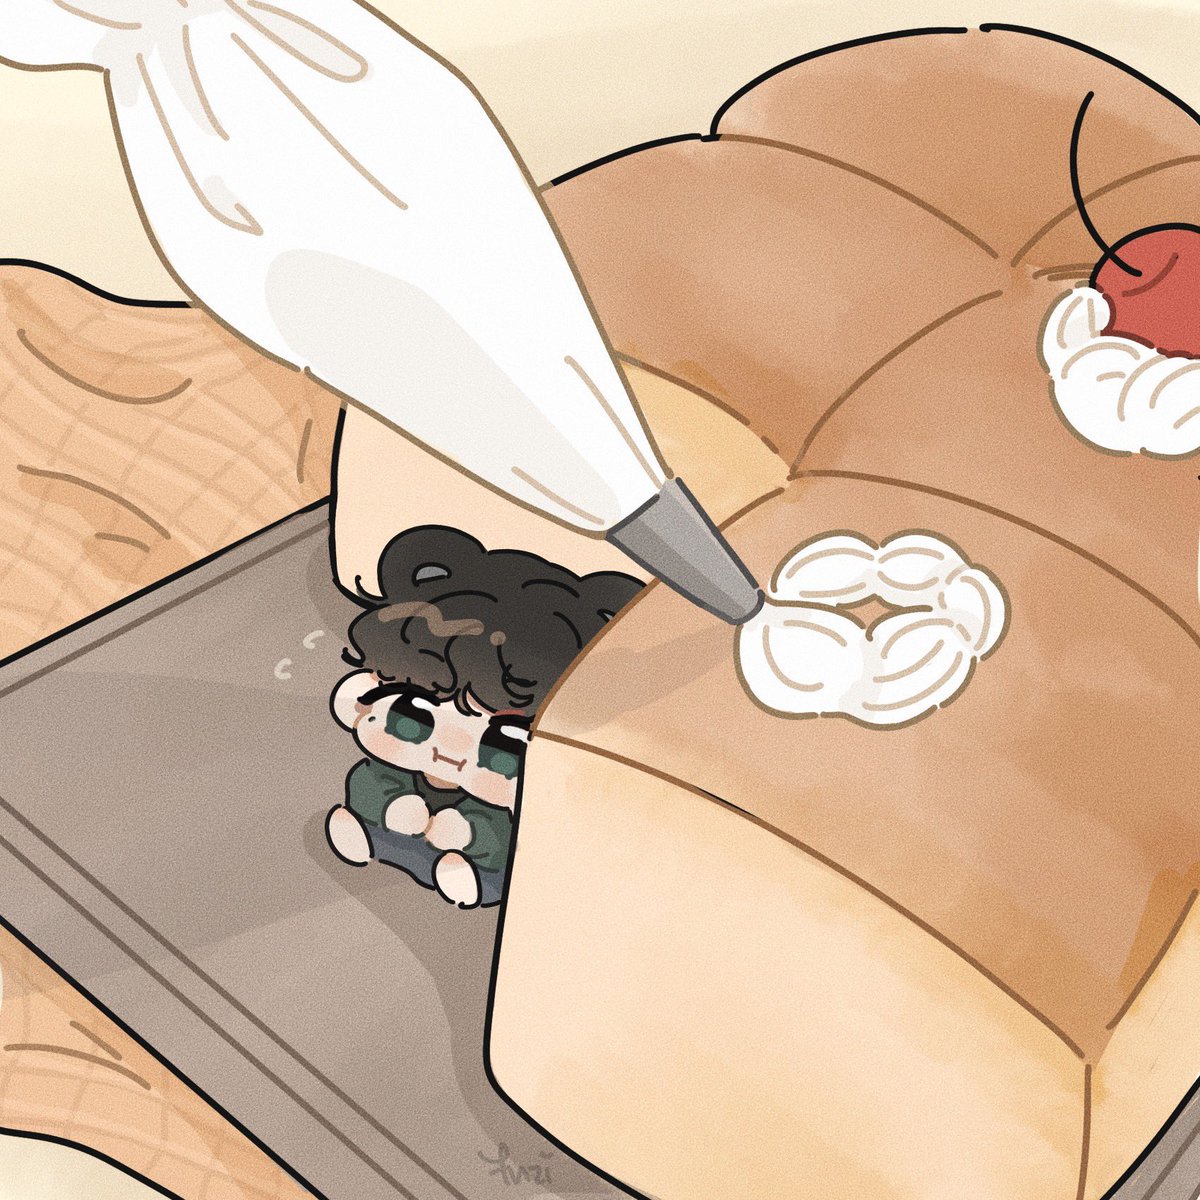 「Taetae bakery?
#V #btsfanart 」|yuziのイラスト